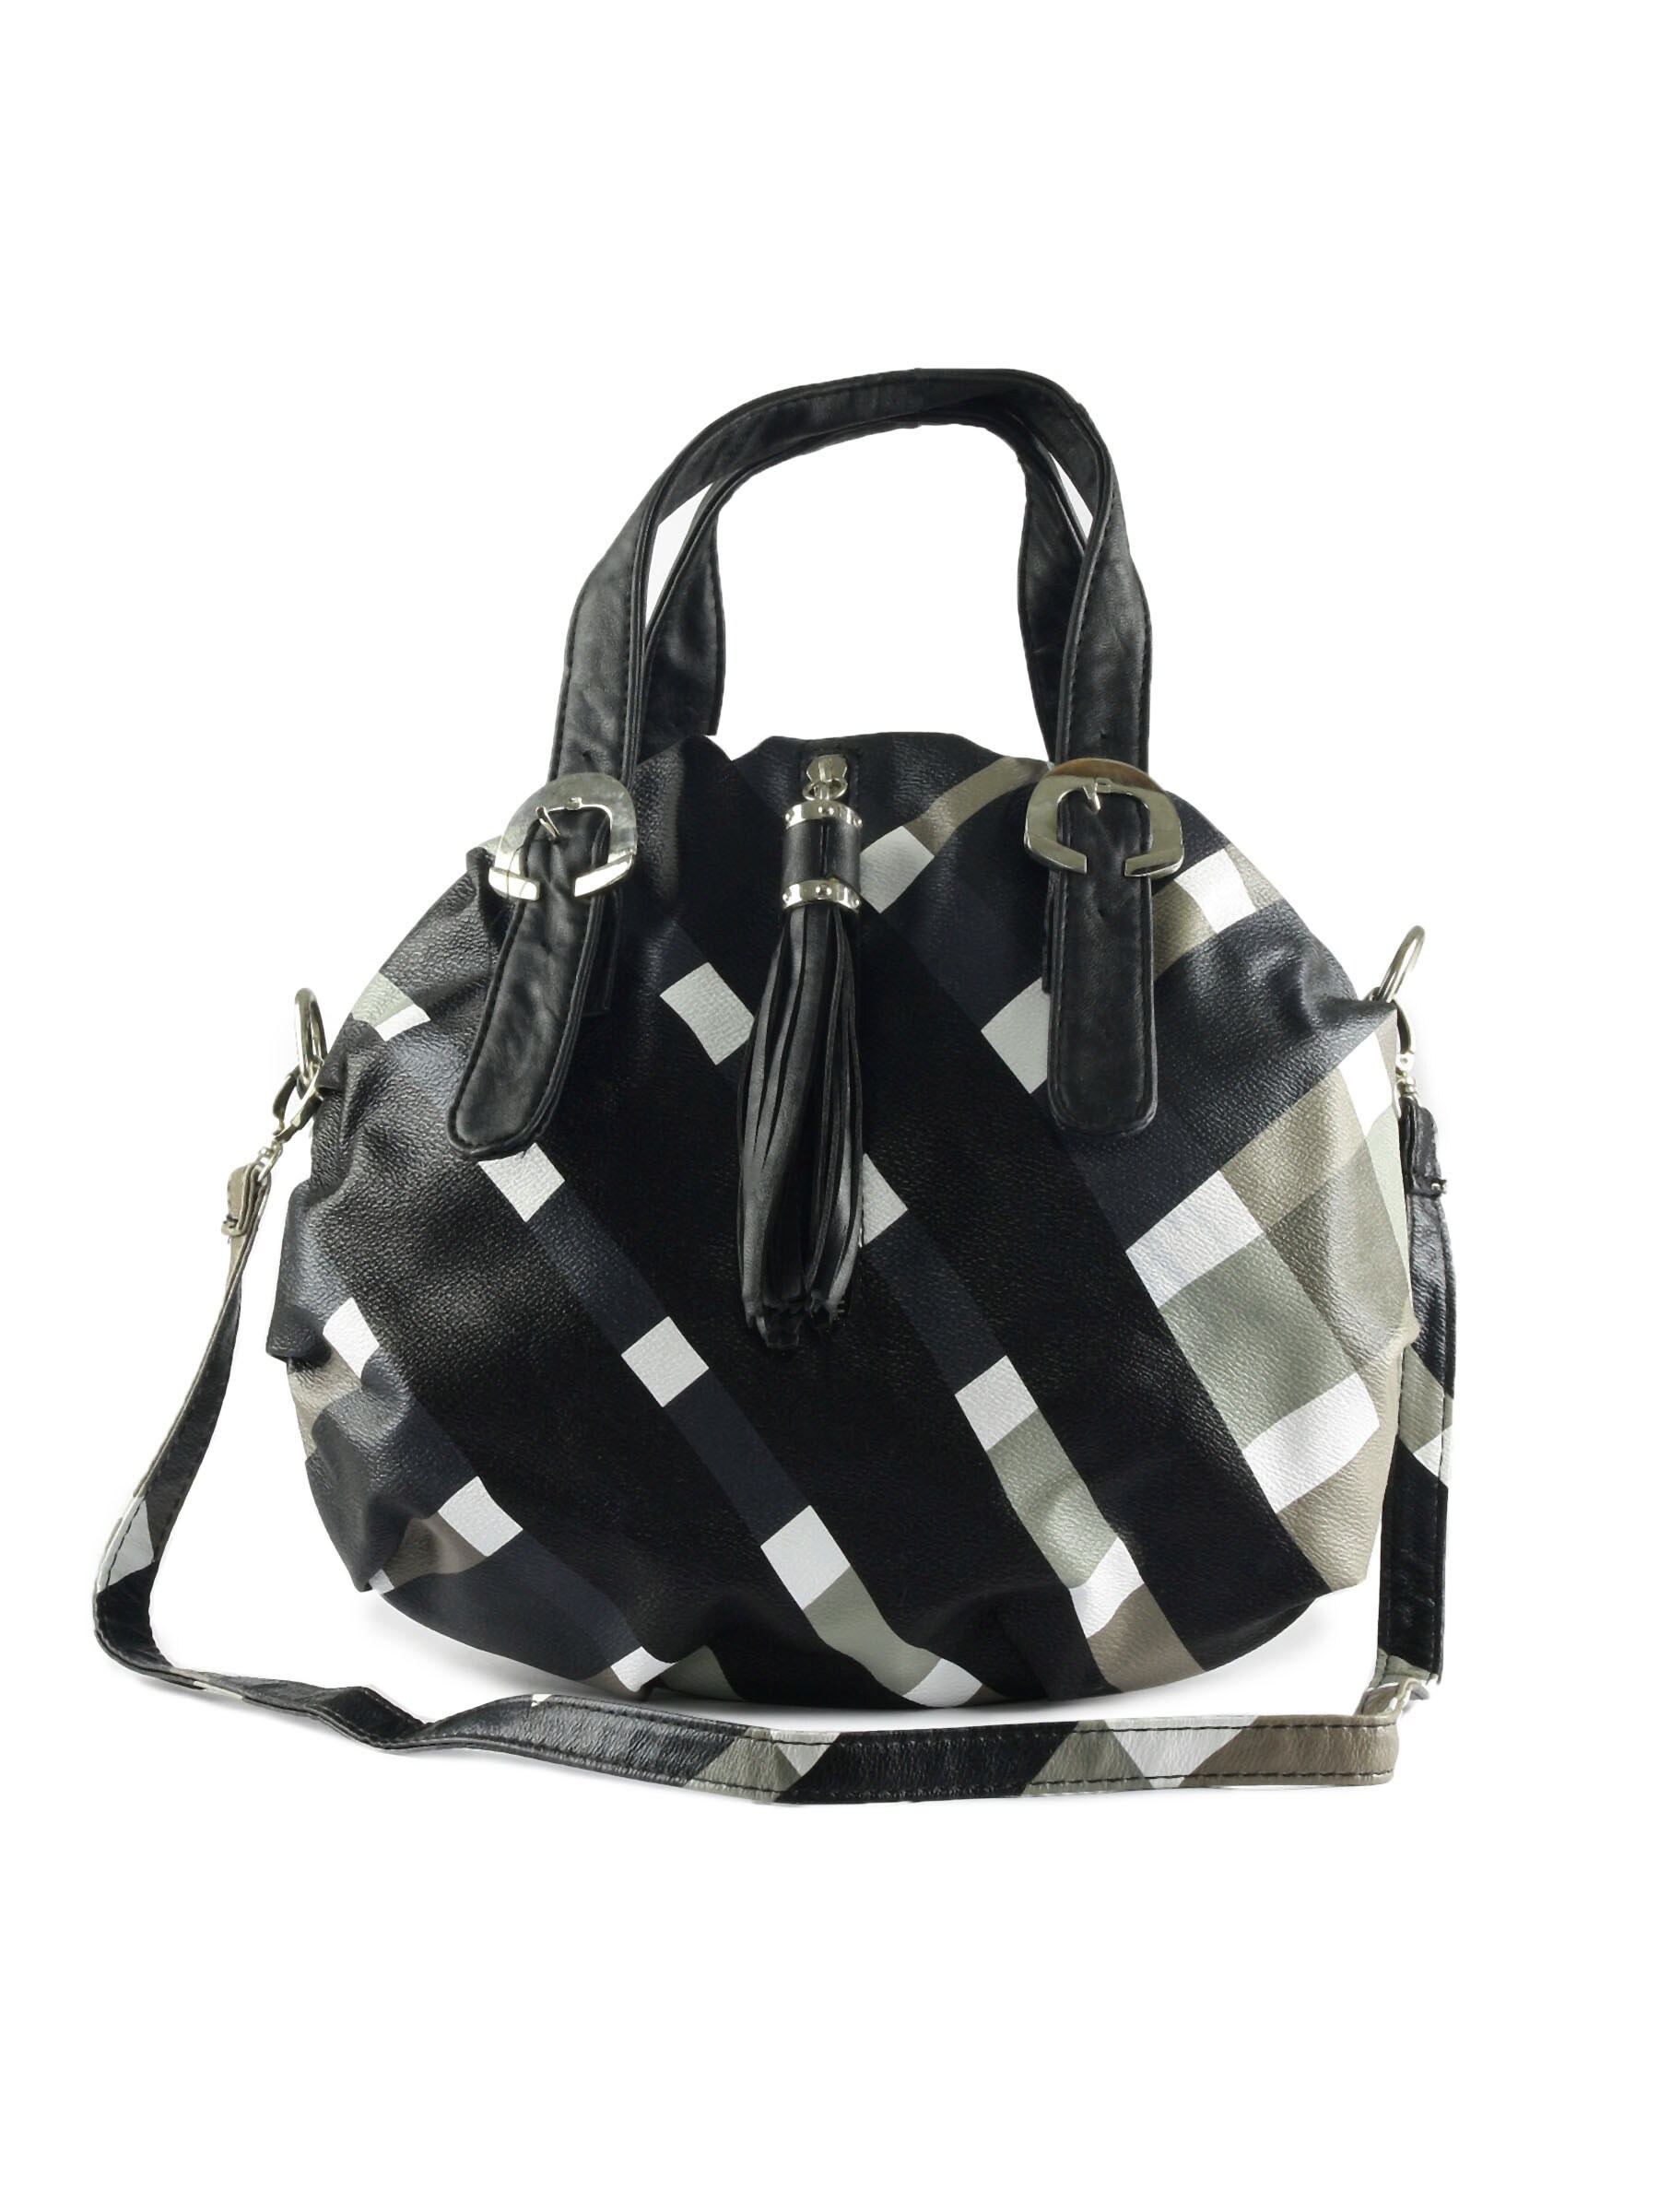 Kiara Women Square Design Black Handbag